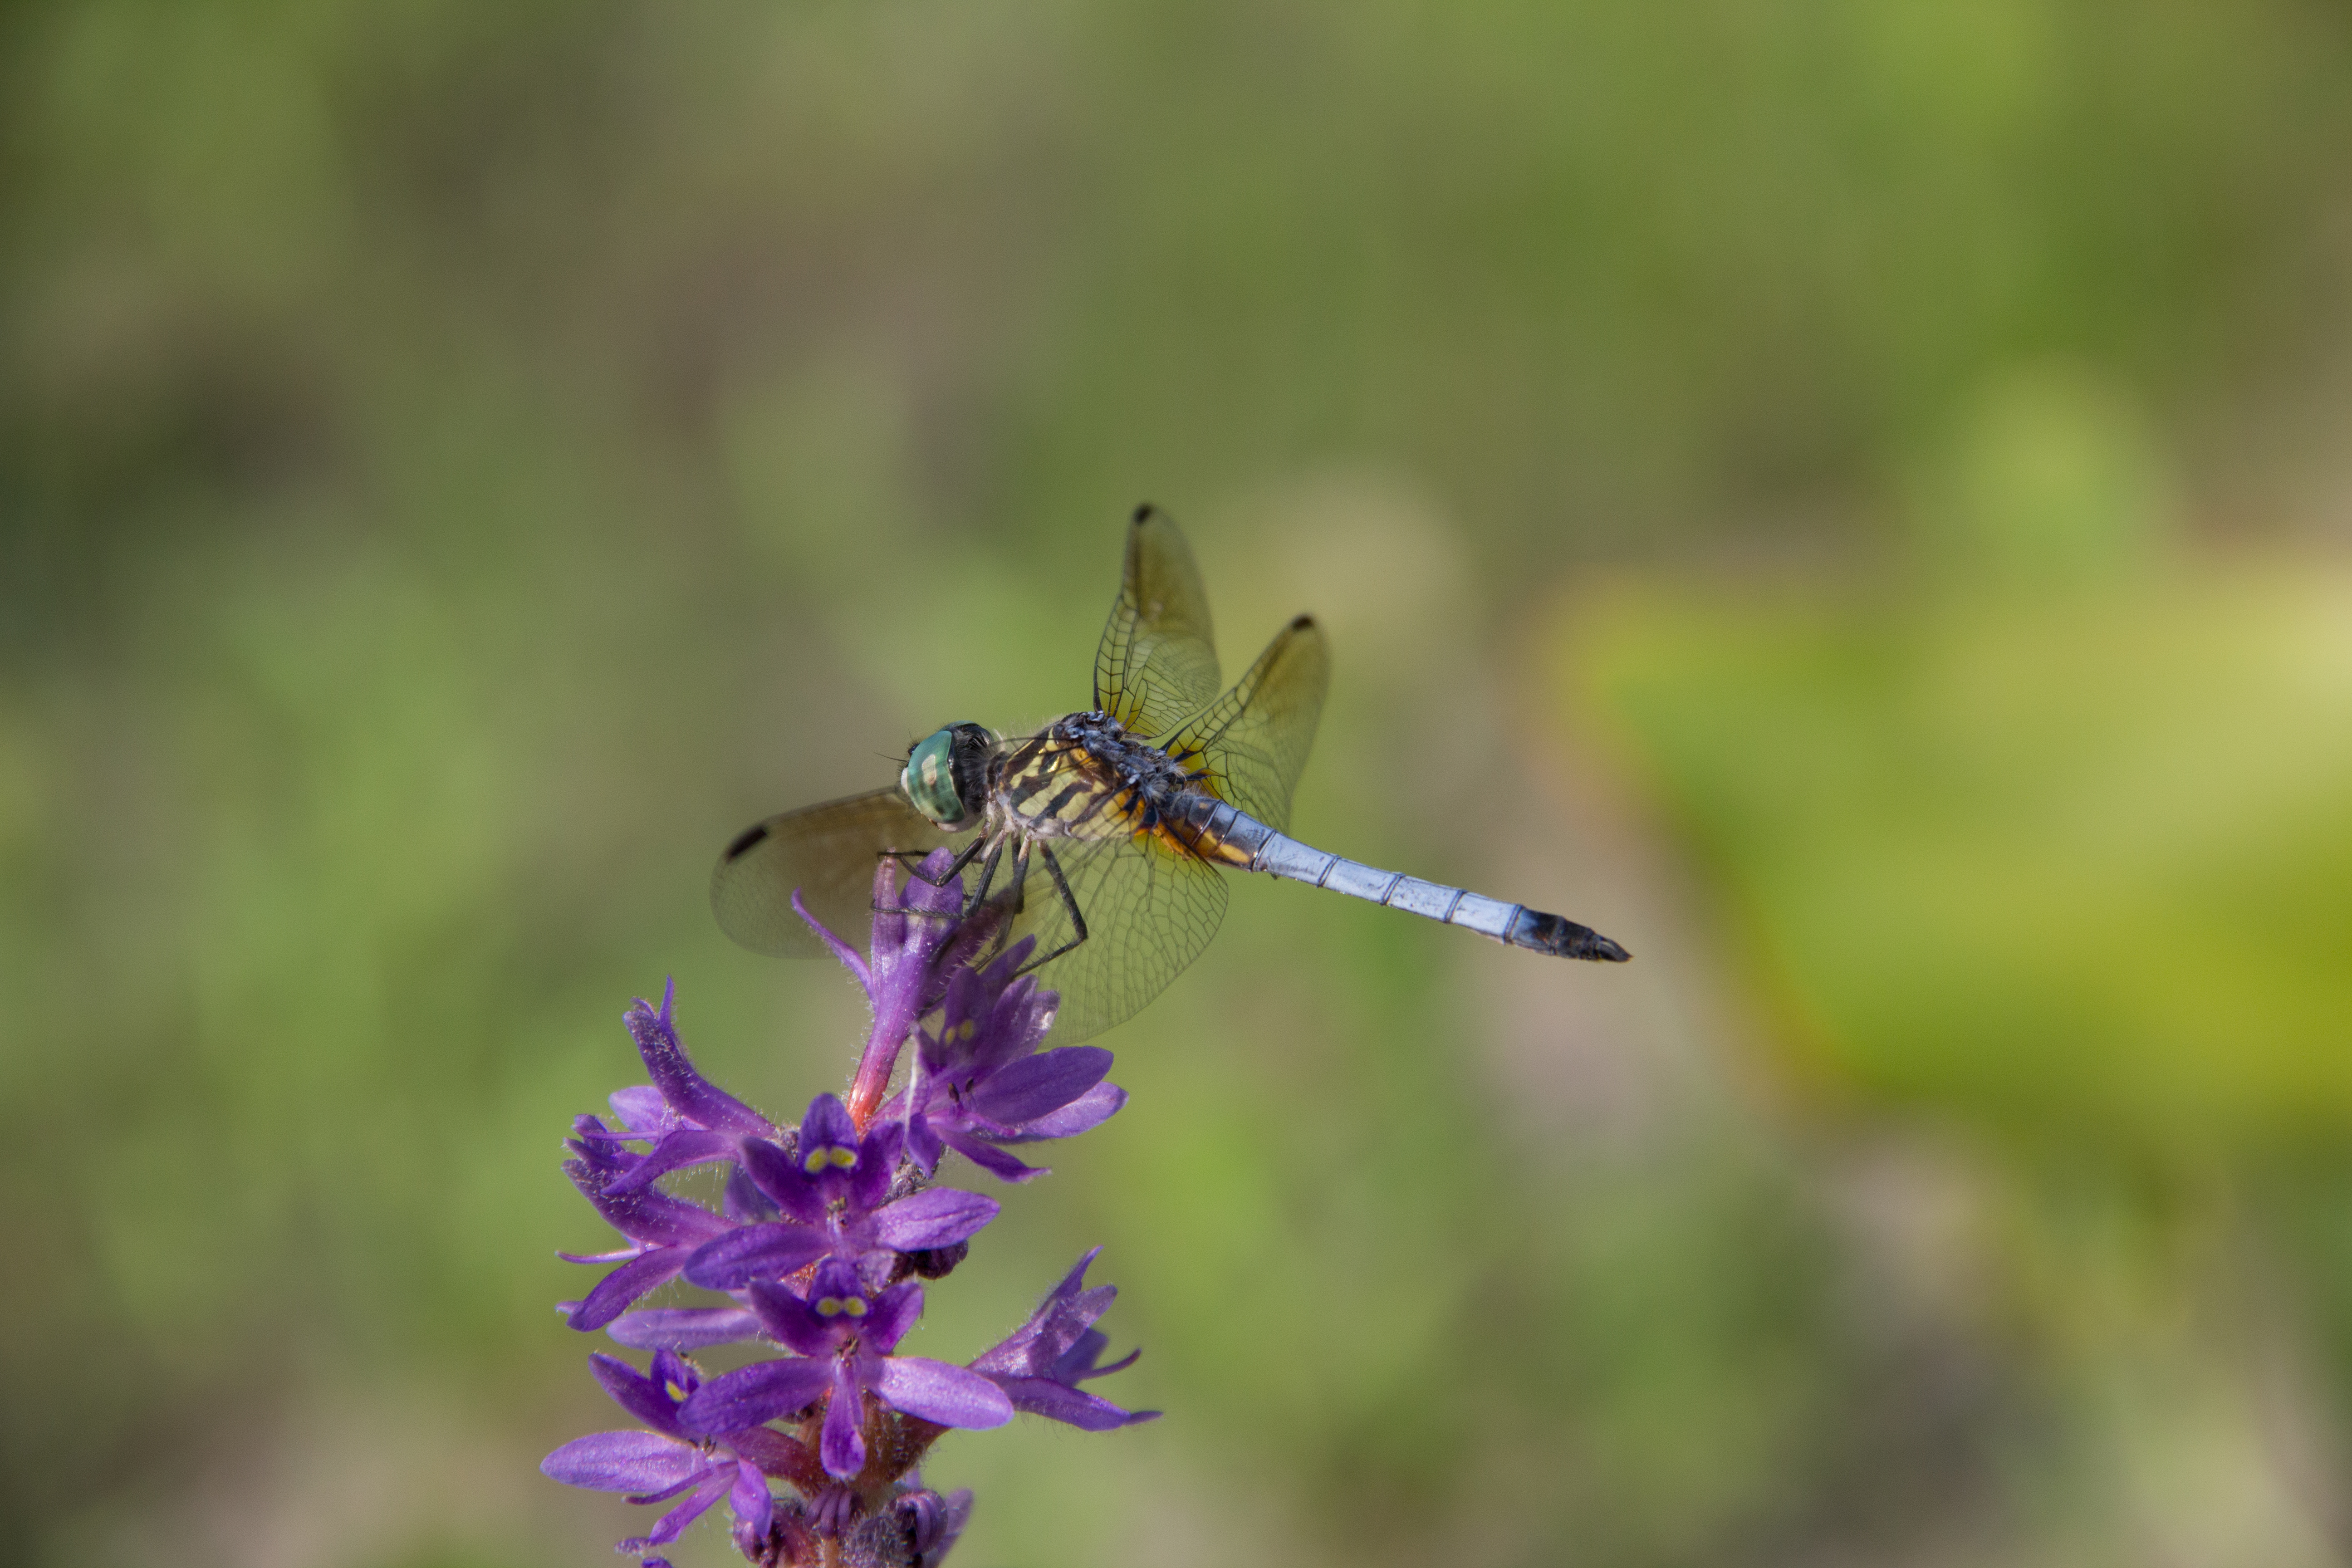 Dragonfly-1-of-1 MCP Предизвици за фотографии и уредување: најважни моменти од оваа недела Активности Задачи Споделување фотографии и инспирација